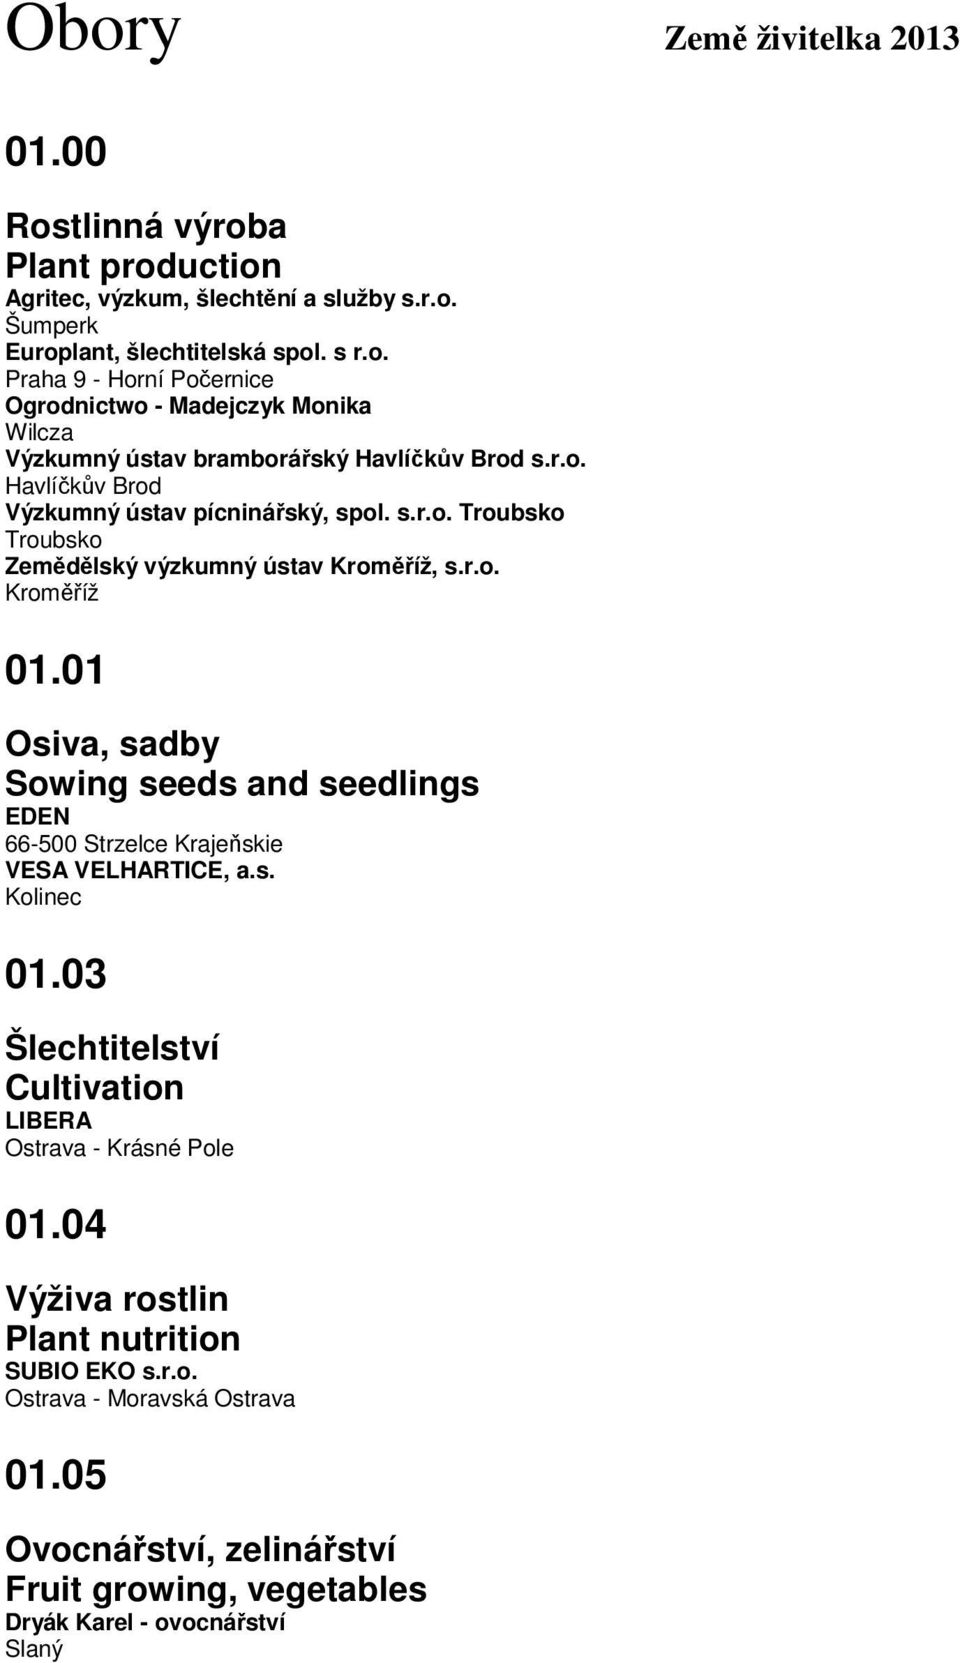 01 Osiva, sadby Sowing seeds and seedlings EDEN 66-500 Strzelce Krajeňskie VESA VELHARTICE, a.s. Kolinec 01.03 Šlechtitelství Cultivation LIBERA Ostrava - Krásné Pole 01.